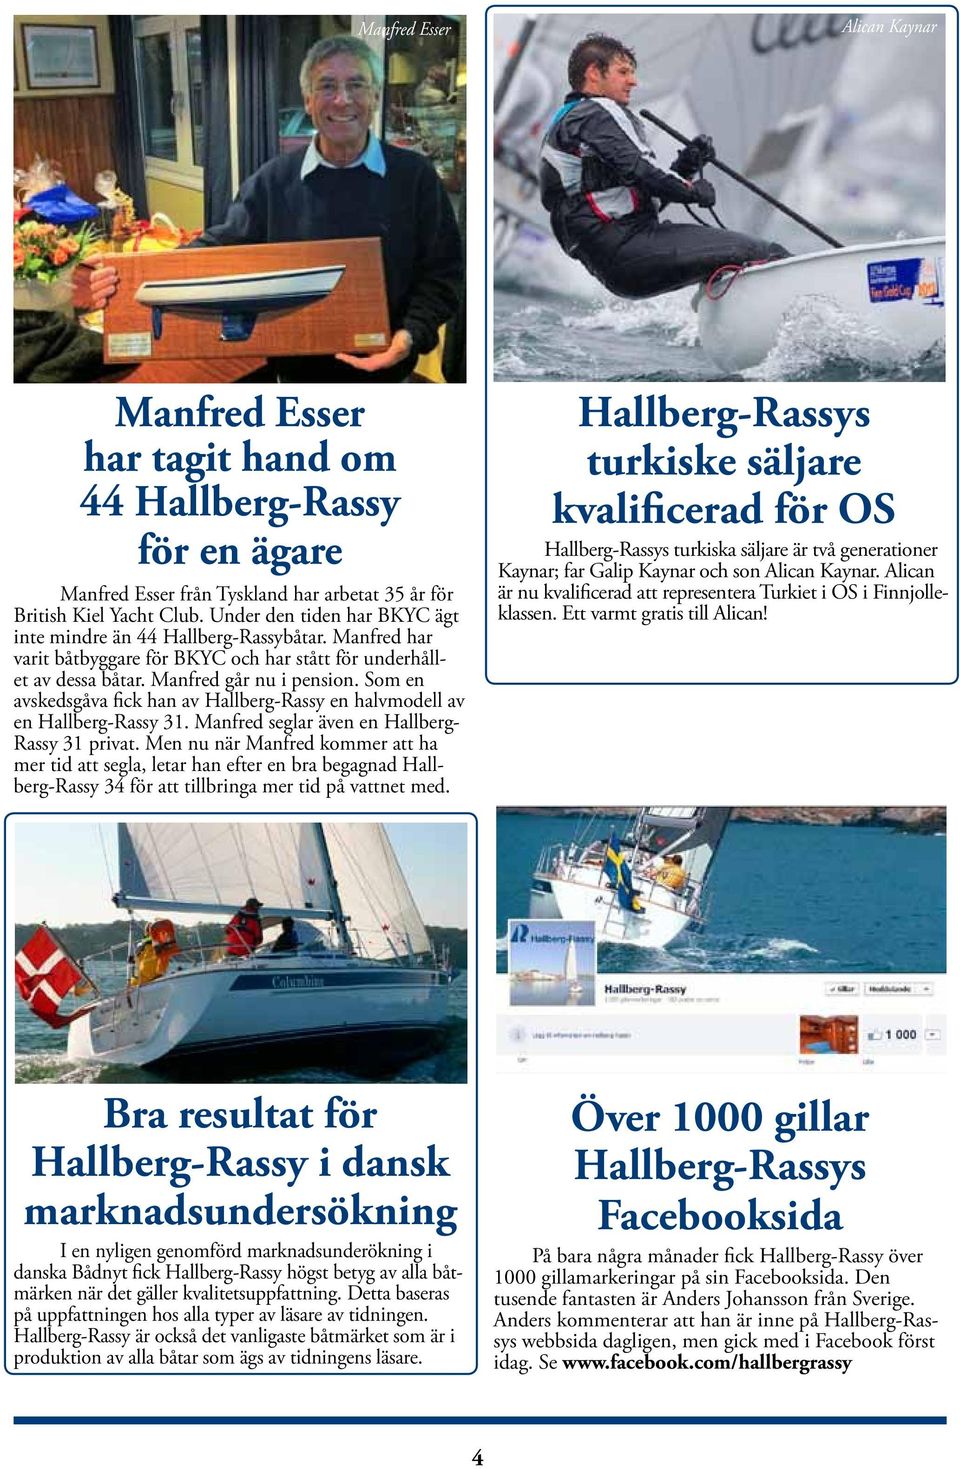 Som en avskedsgåva fick han av Hallberg-Rassy en halvmodell av en Hallberg-Rassy 31. Manfred seglar även en Hallberg- Rassy 31 privat.